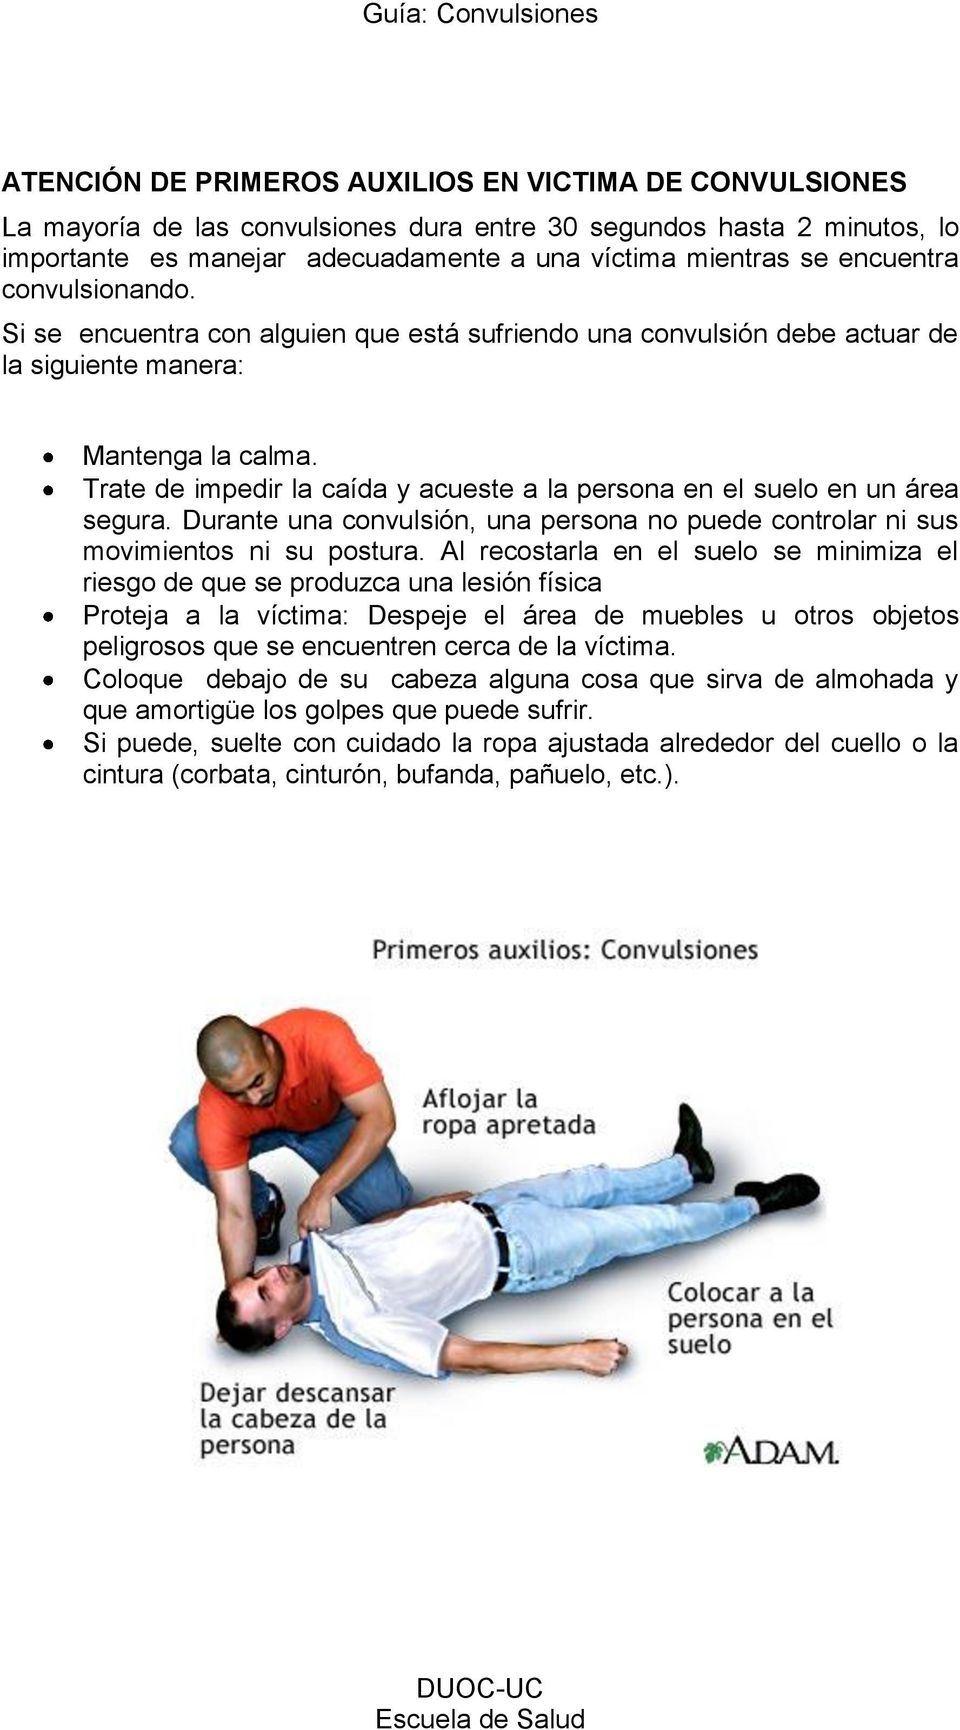 Trate de impedir la caída y acueste a la persona en el suelo en un área segura. Durante una convulsión, una persona no puede controlar ni sus movimientos ni su postura.